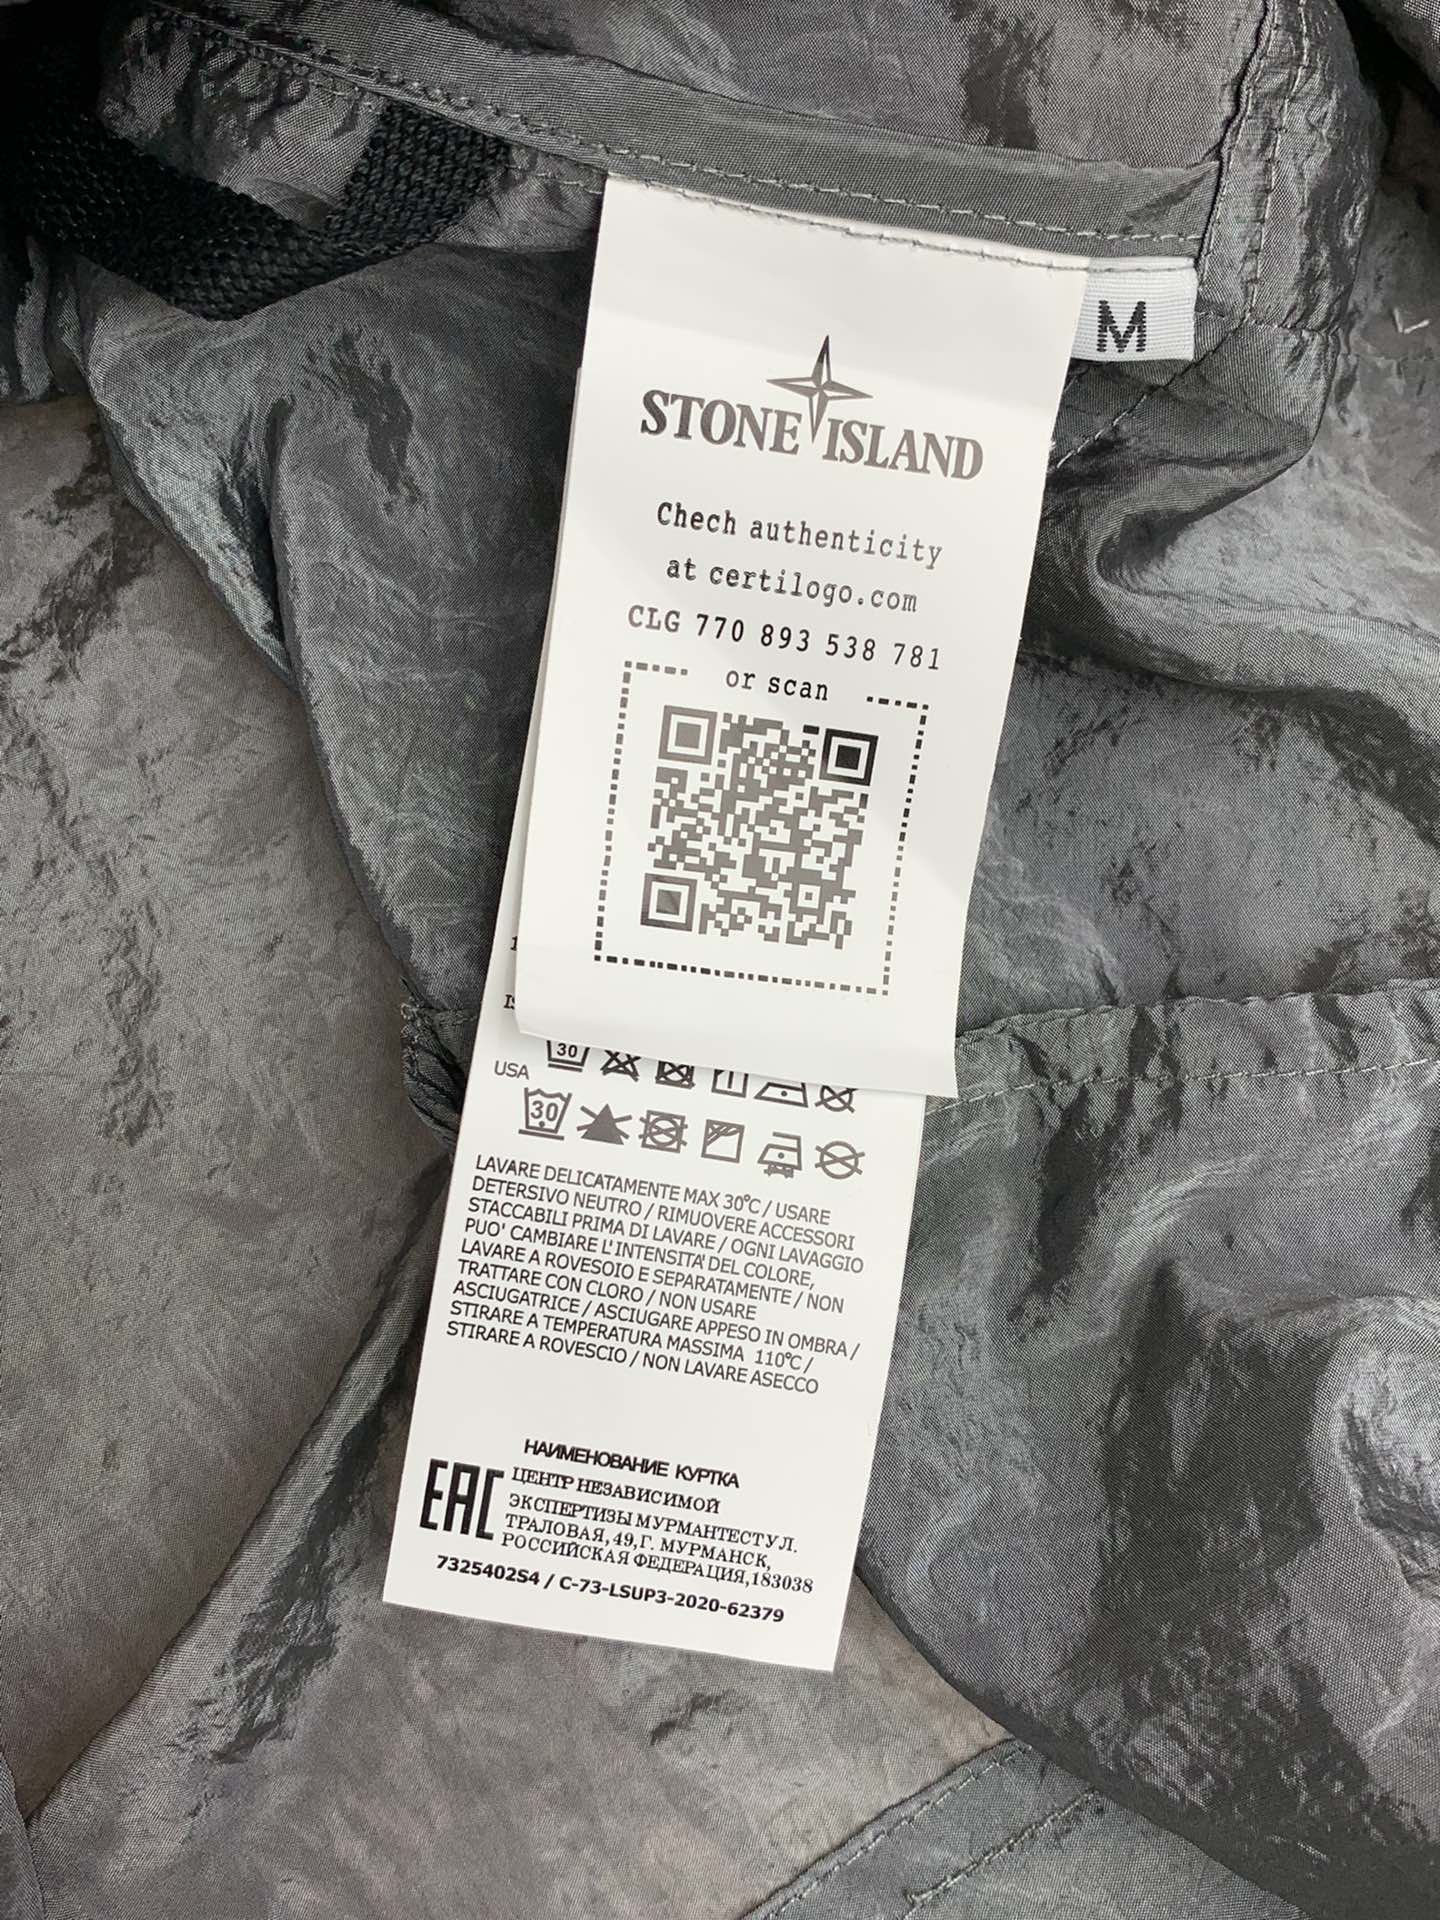 STONEISLAND石头岛金属尼龙多拉链防晒服外套独家制作的面料让这件防晒服成为当下最火的搭配利器！面